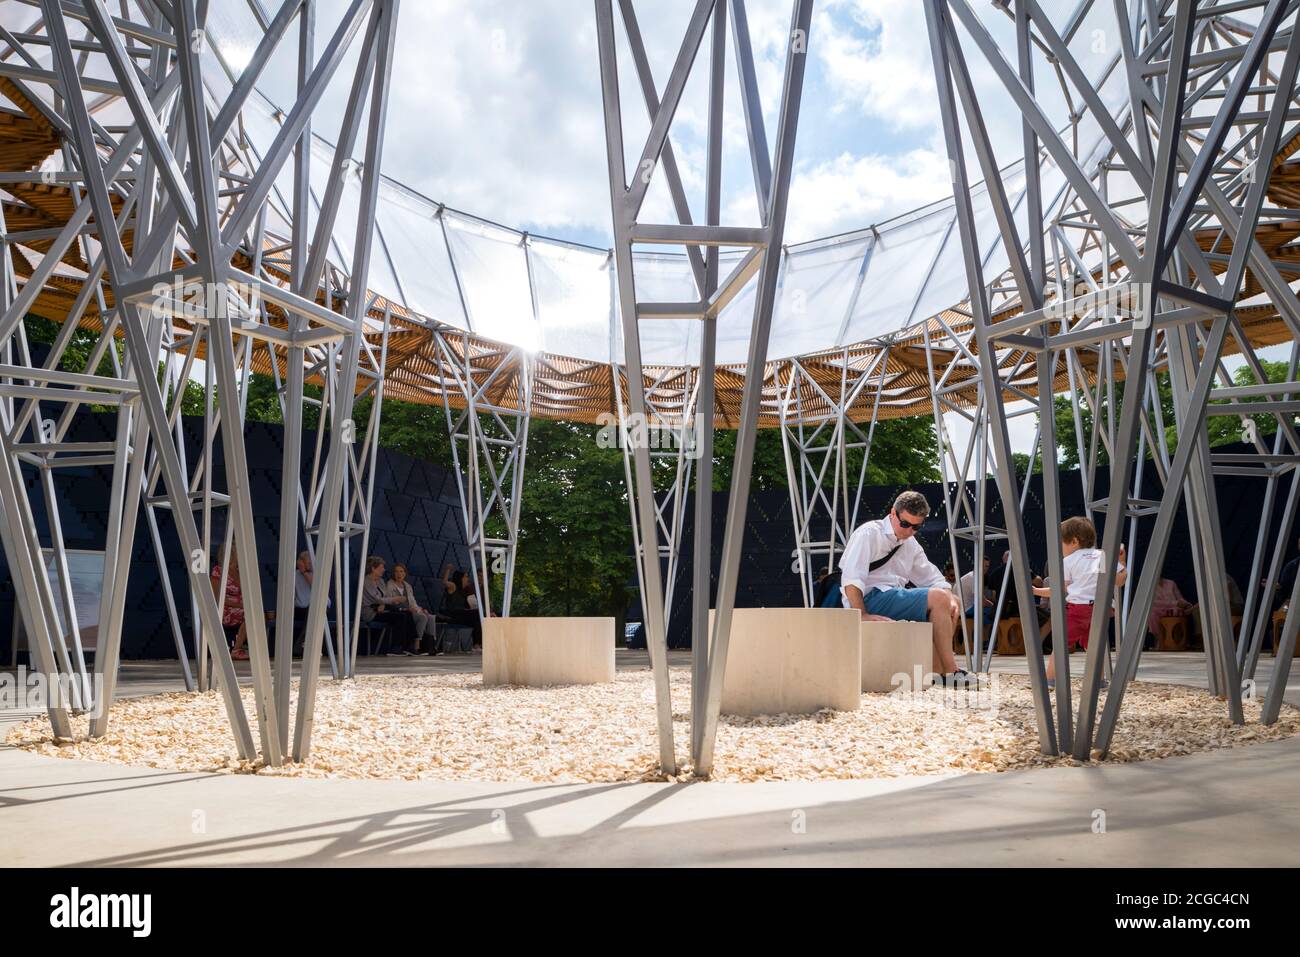 Der 2017 Serpentine Pavillon, eine temporäre Struktur aus Holz, in dunkelblauen und natürlichen Farben, organische Formen mit zentralen Innenhof. Stockfoto